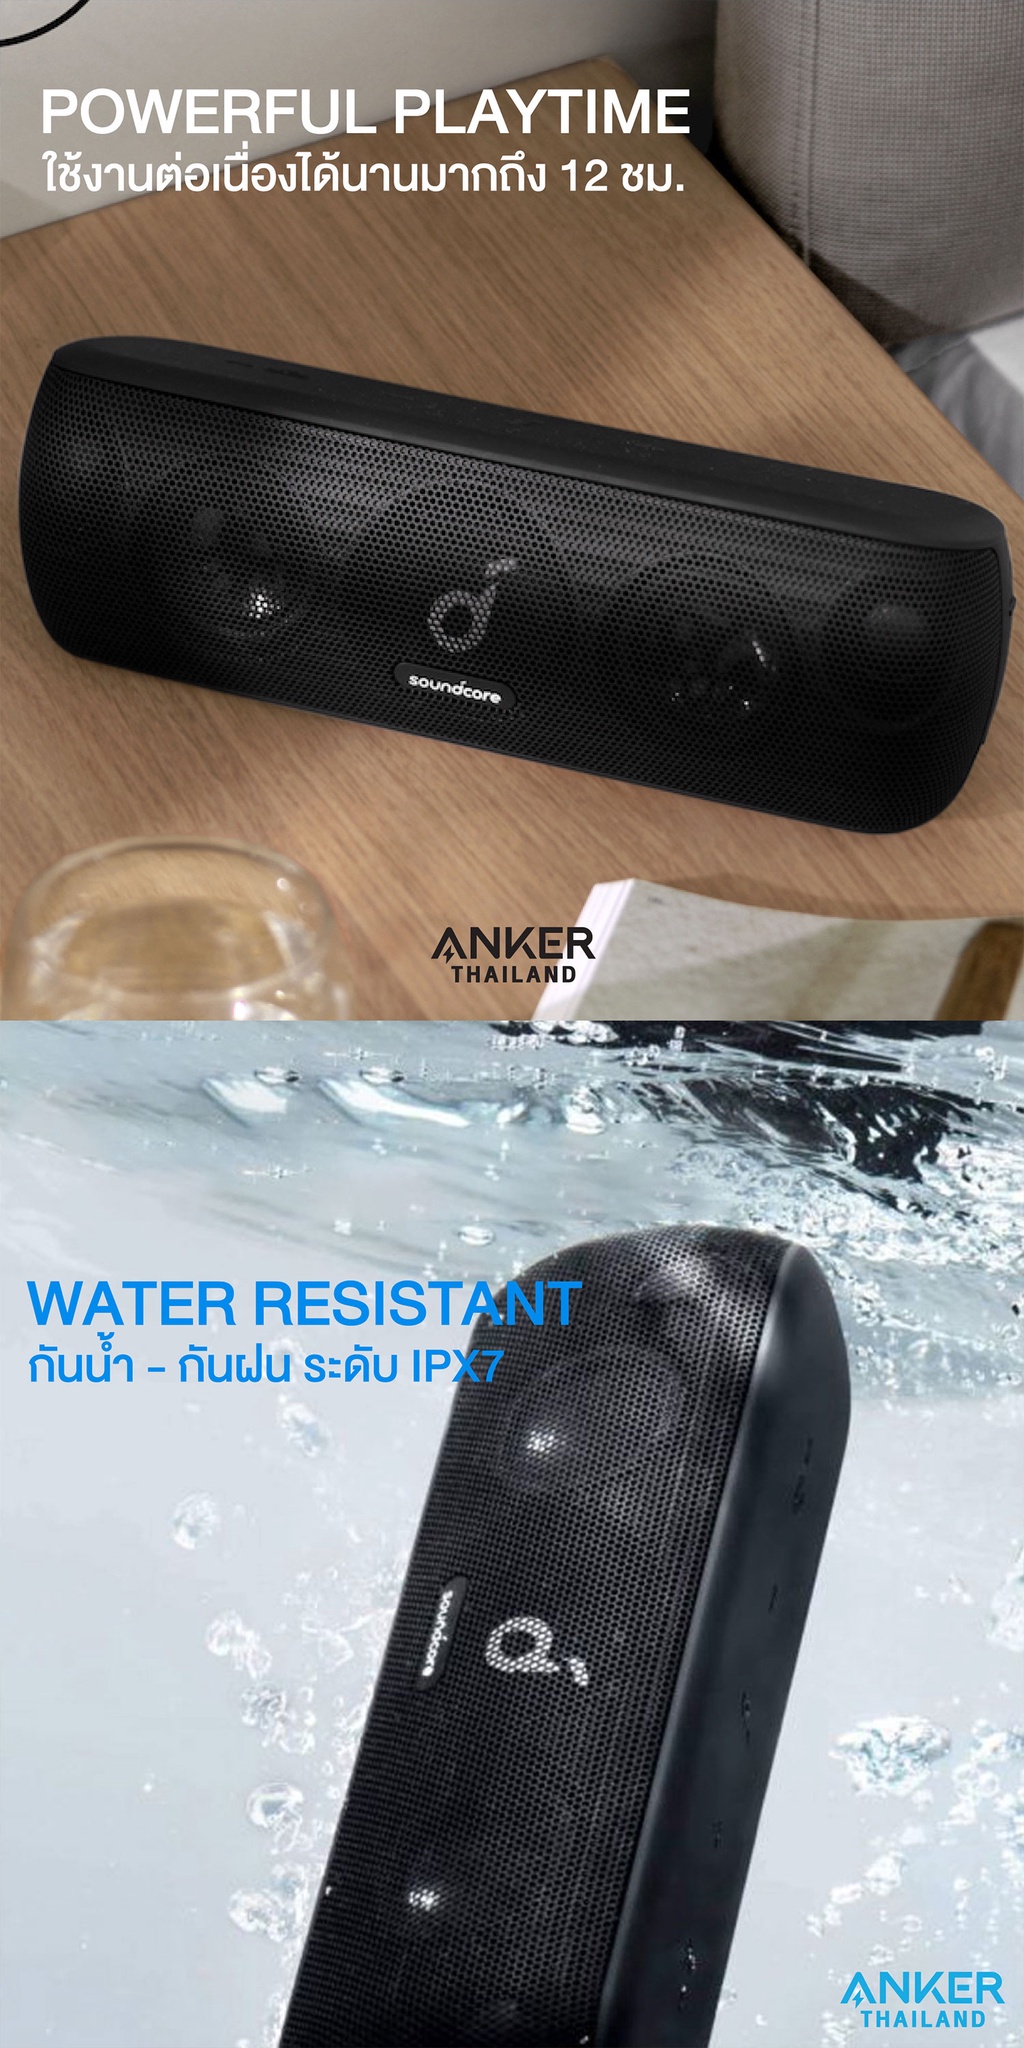 ข้อมูลประกอบของ Anker Soundcore Motion+ Bluetooth Speaker with Hi-Res 30W Audio IPX7 ลำโพงบลูทูธไร้สาย จับคู่ลำโพง 2 ตัว Dual Pairing - AK184